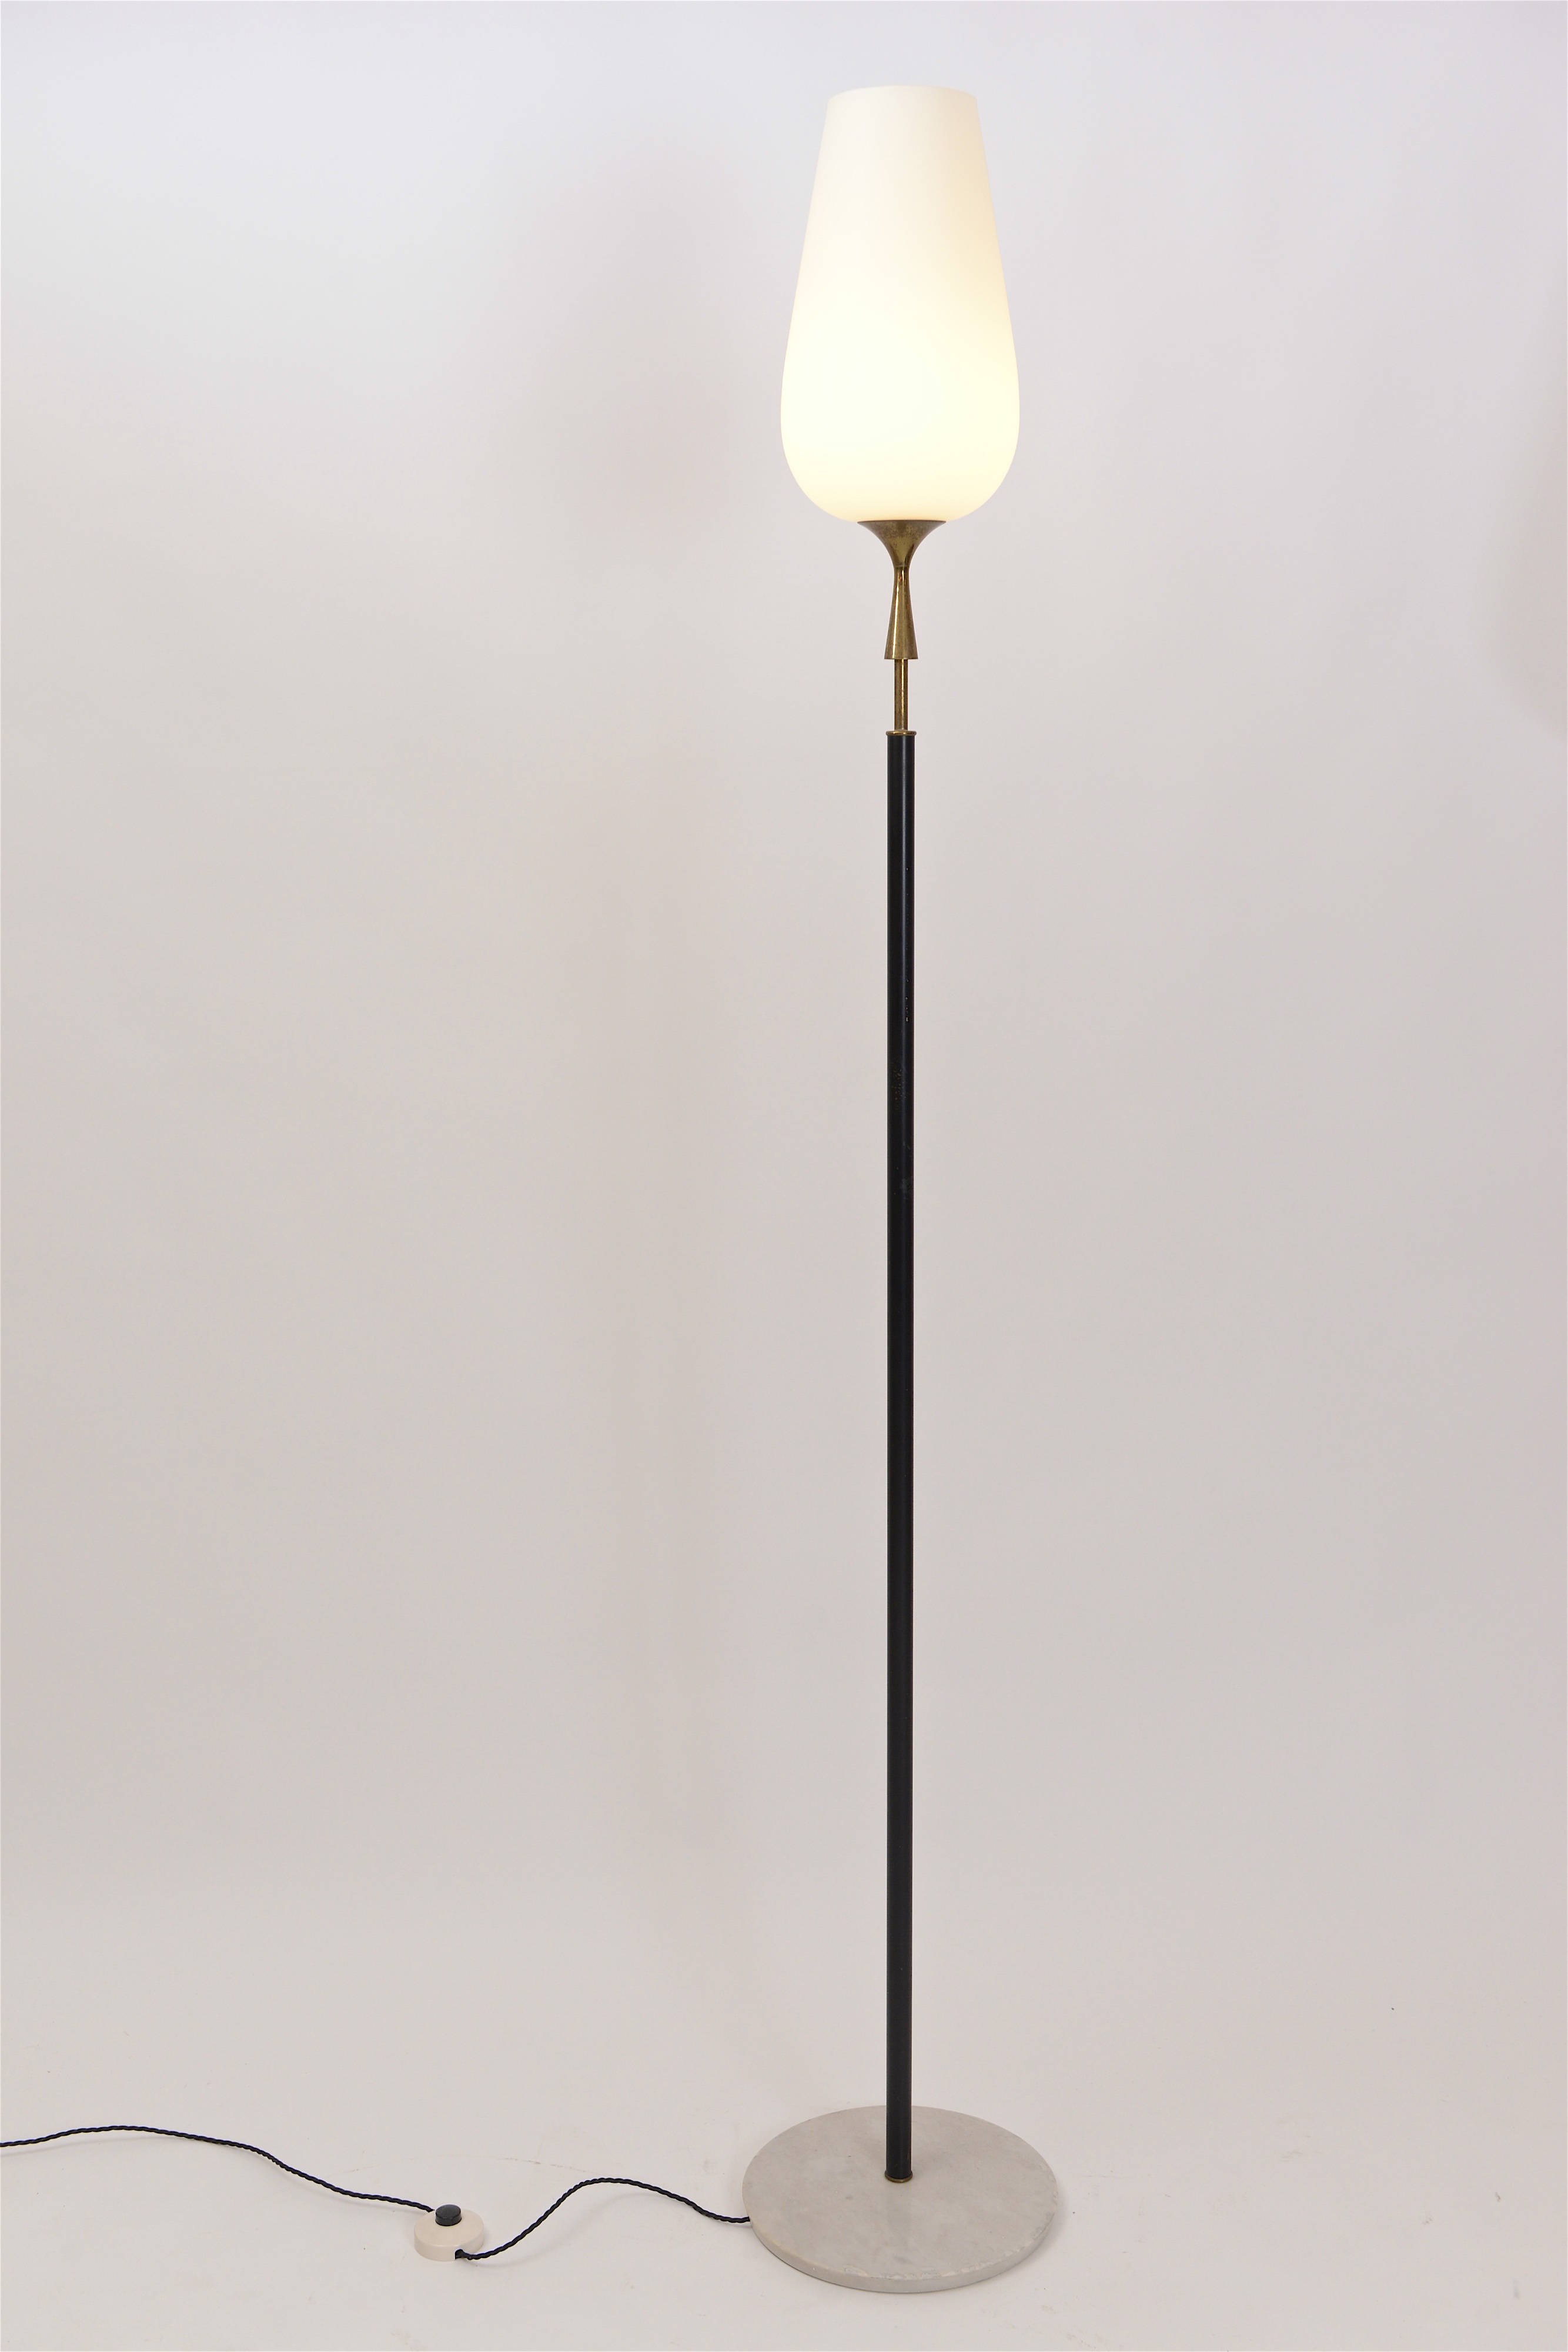 Opaline glass floor lamp by Arredoluce